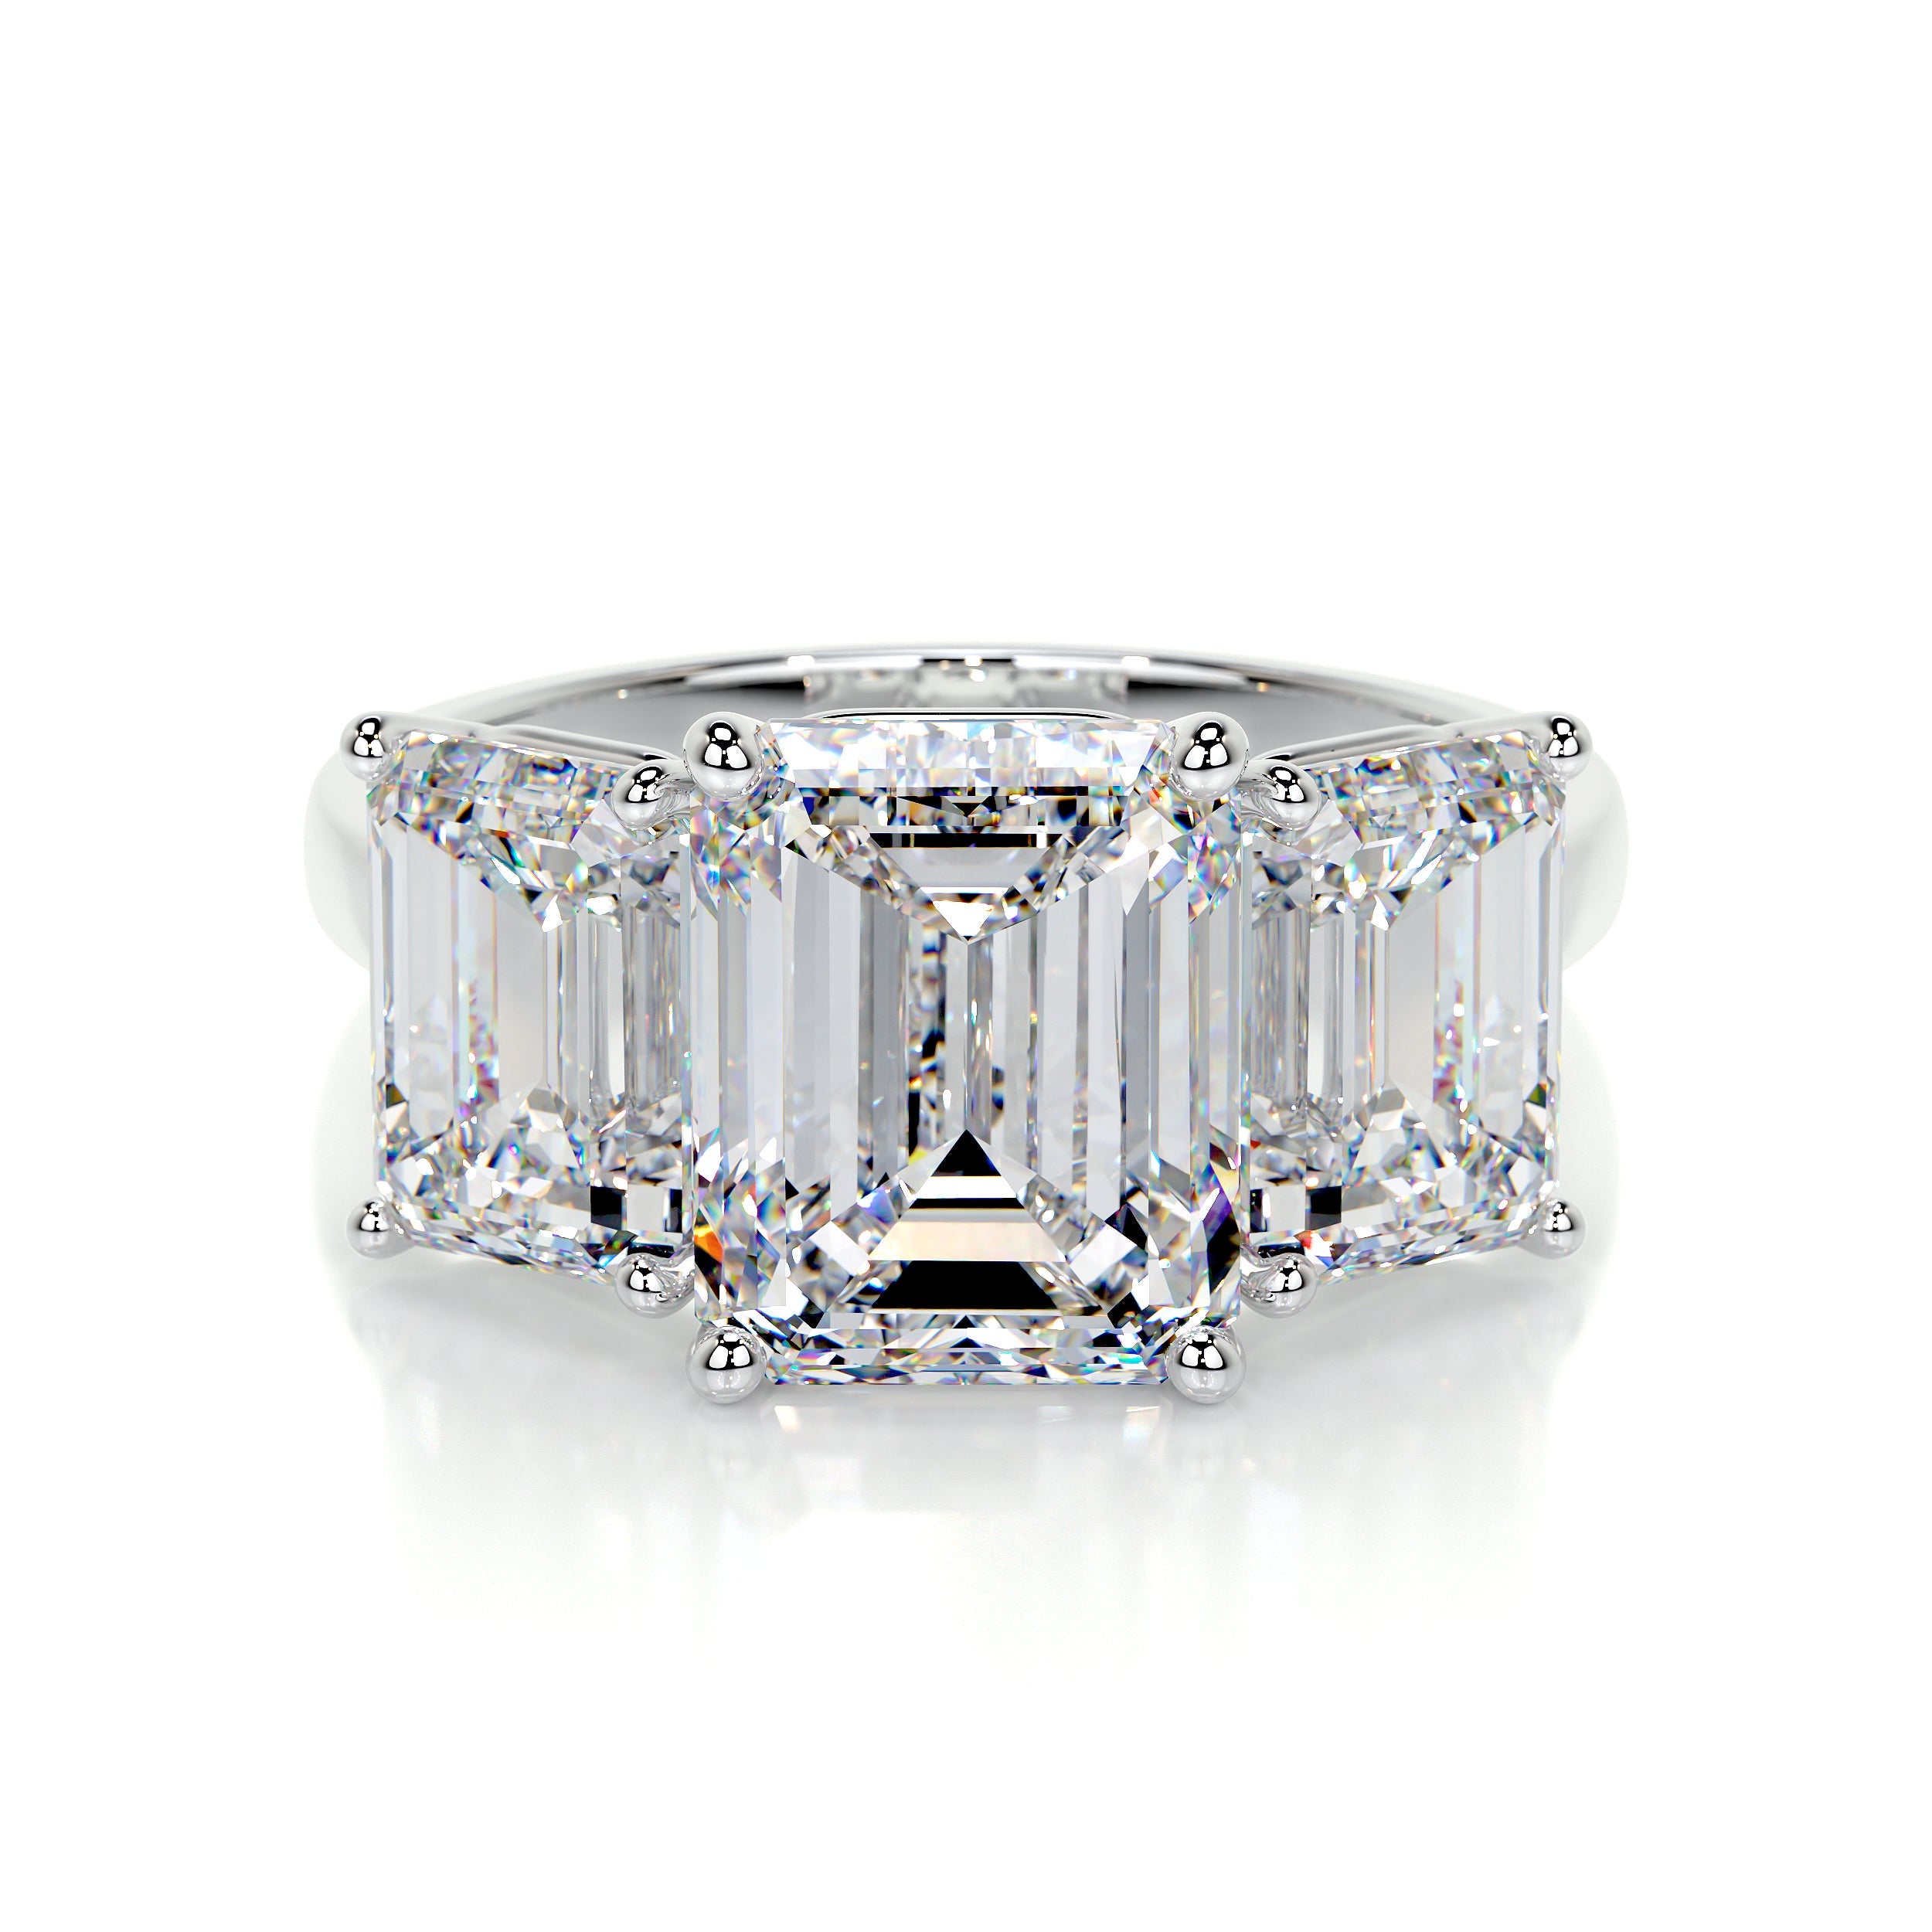 Amanda Lab Grown Diamond Ring   (4 Carat) -18K White Gold